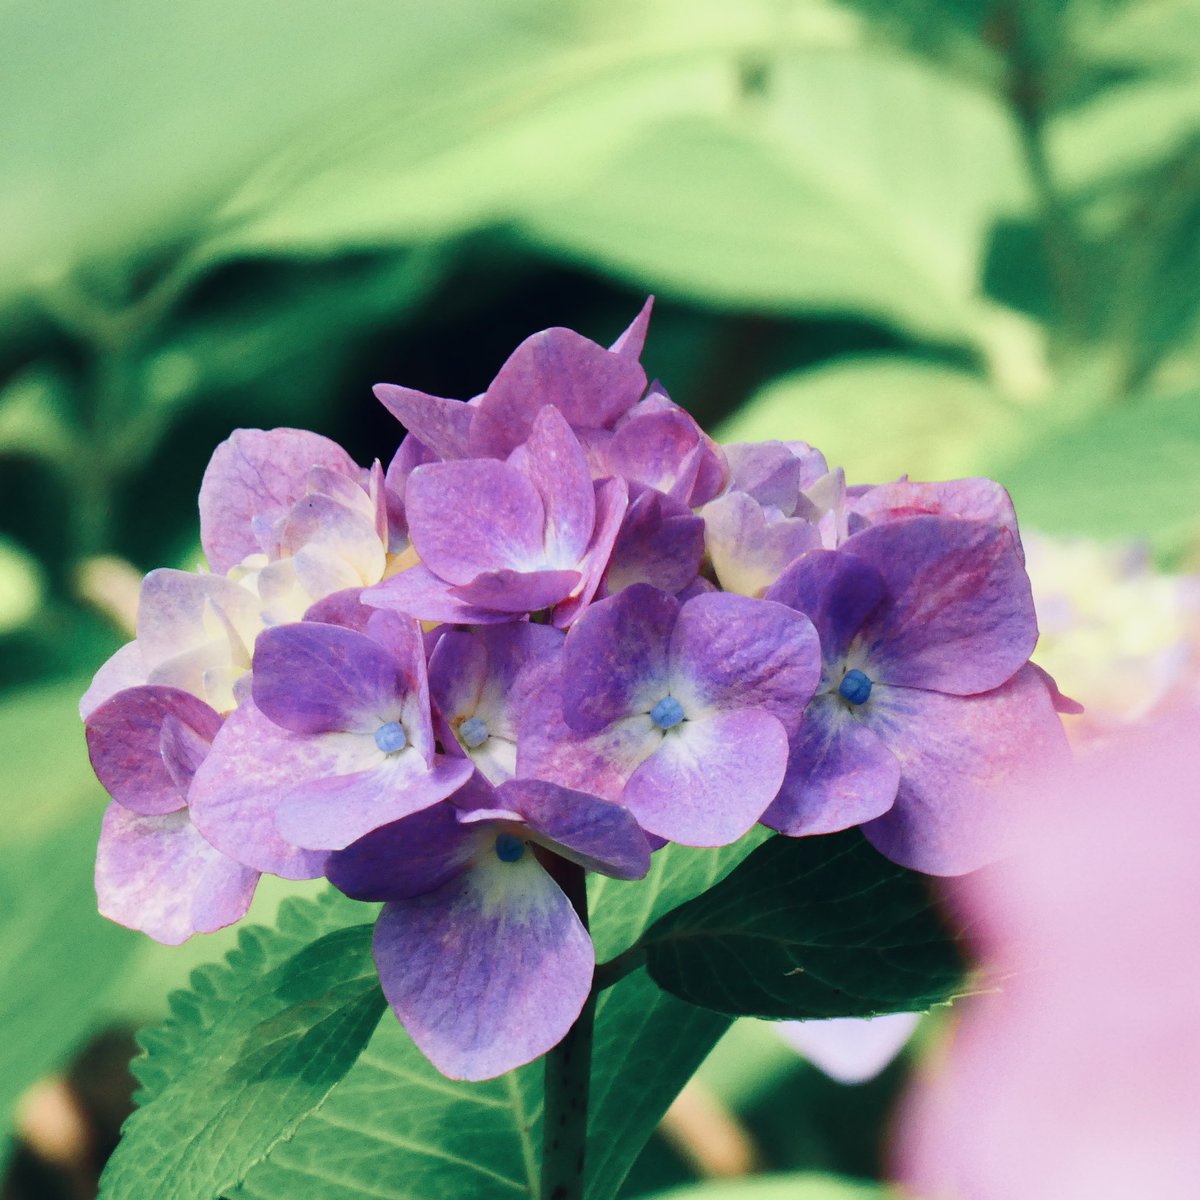 紫陽花集　⑧

#TLを花でいっぱいしよう #写真で奏でる私の世界 #お写んぽ #カメラマンさんと繋がりたい #ファインダー越しの私の世界 #キリトリセカイ #photography #PhotoOfTheDay